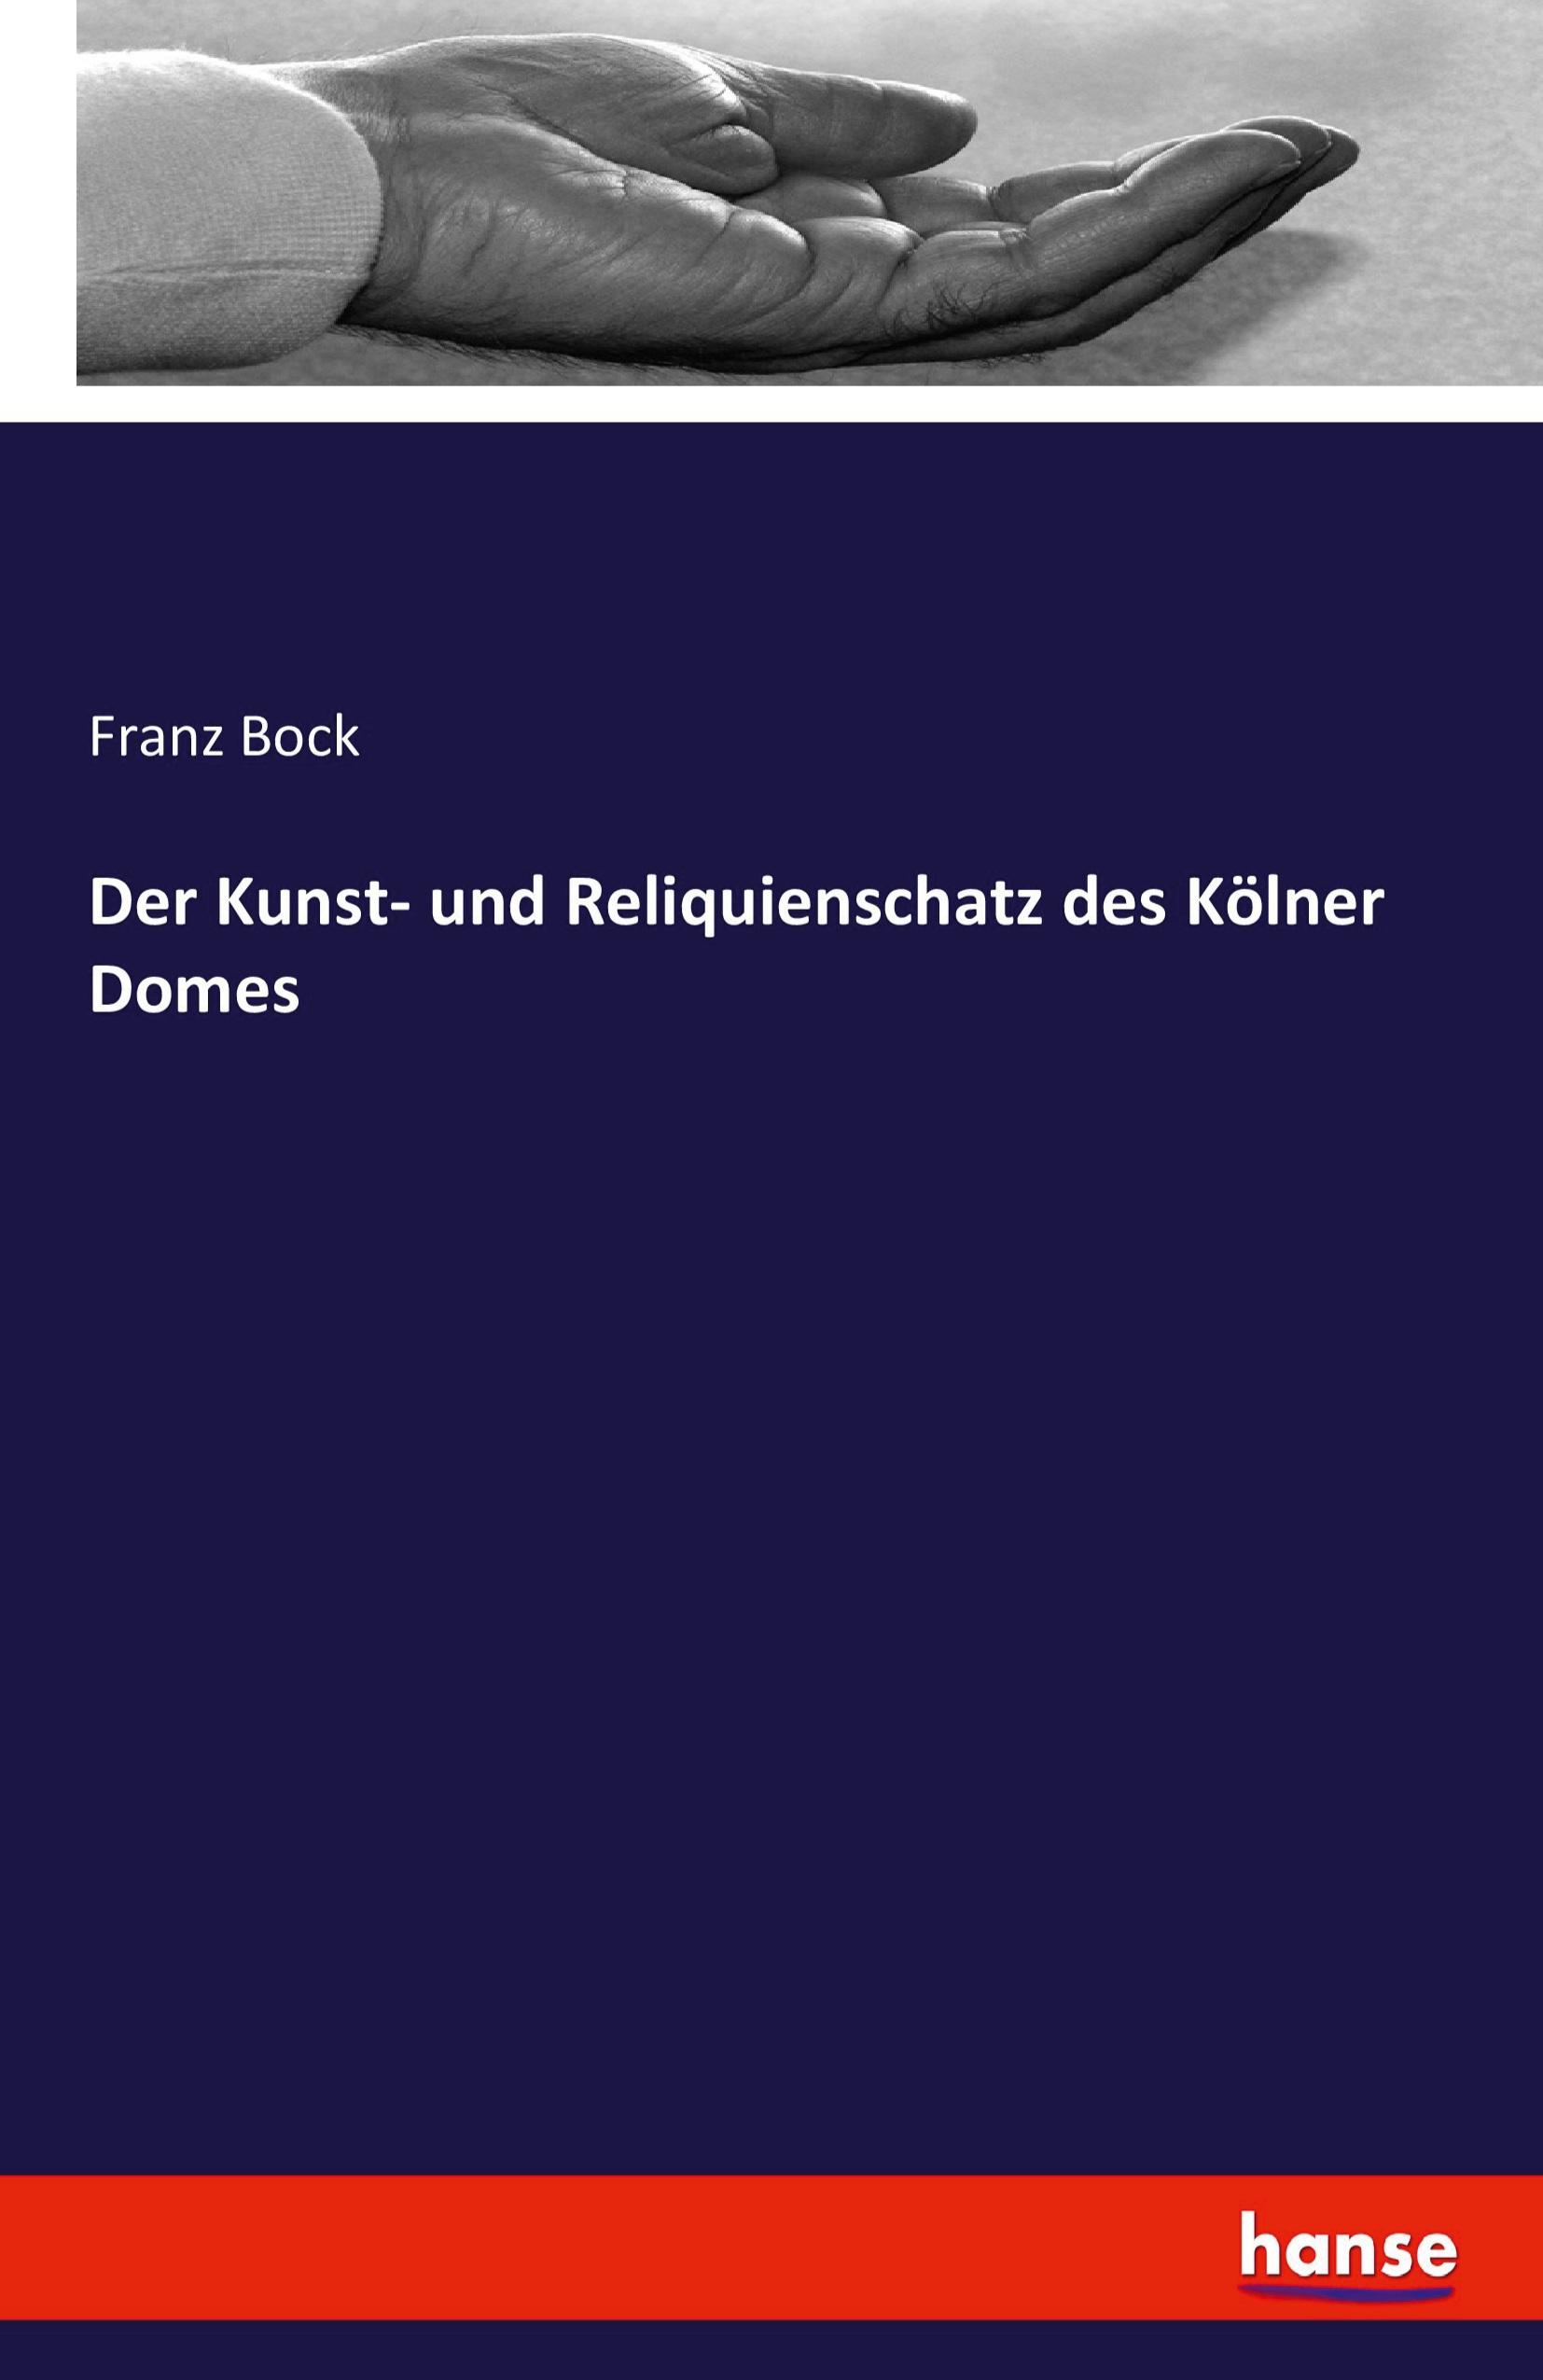 Der Kunst- und Reliquienschatz des Koelner Domes - Bock, Franz